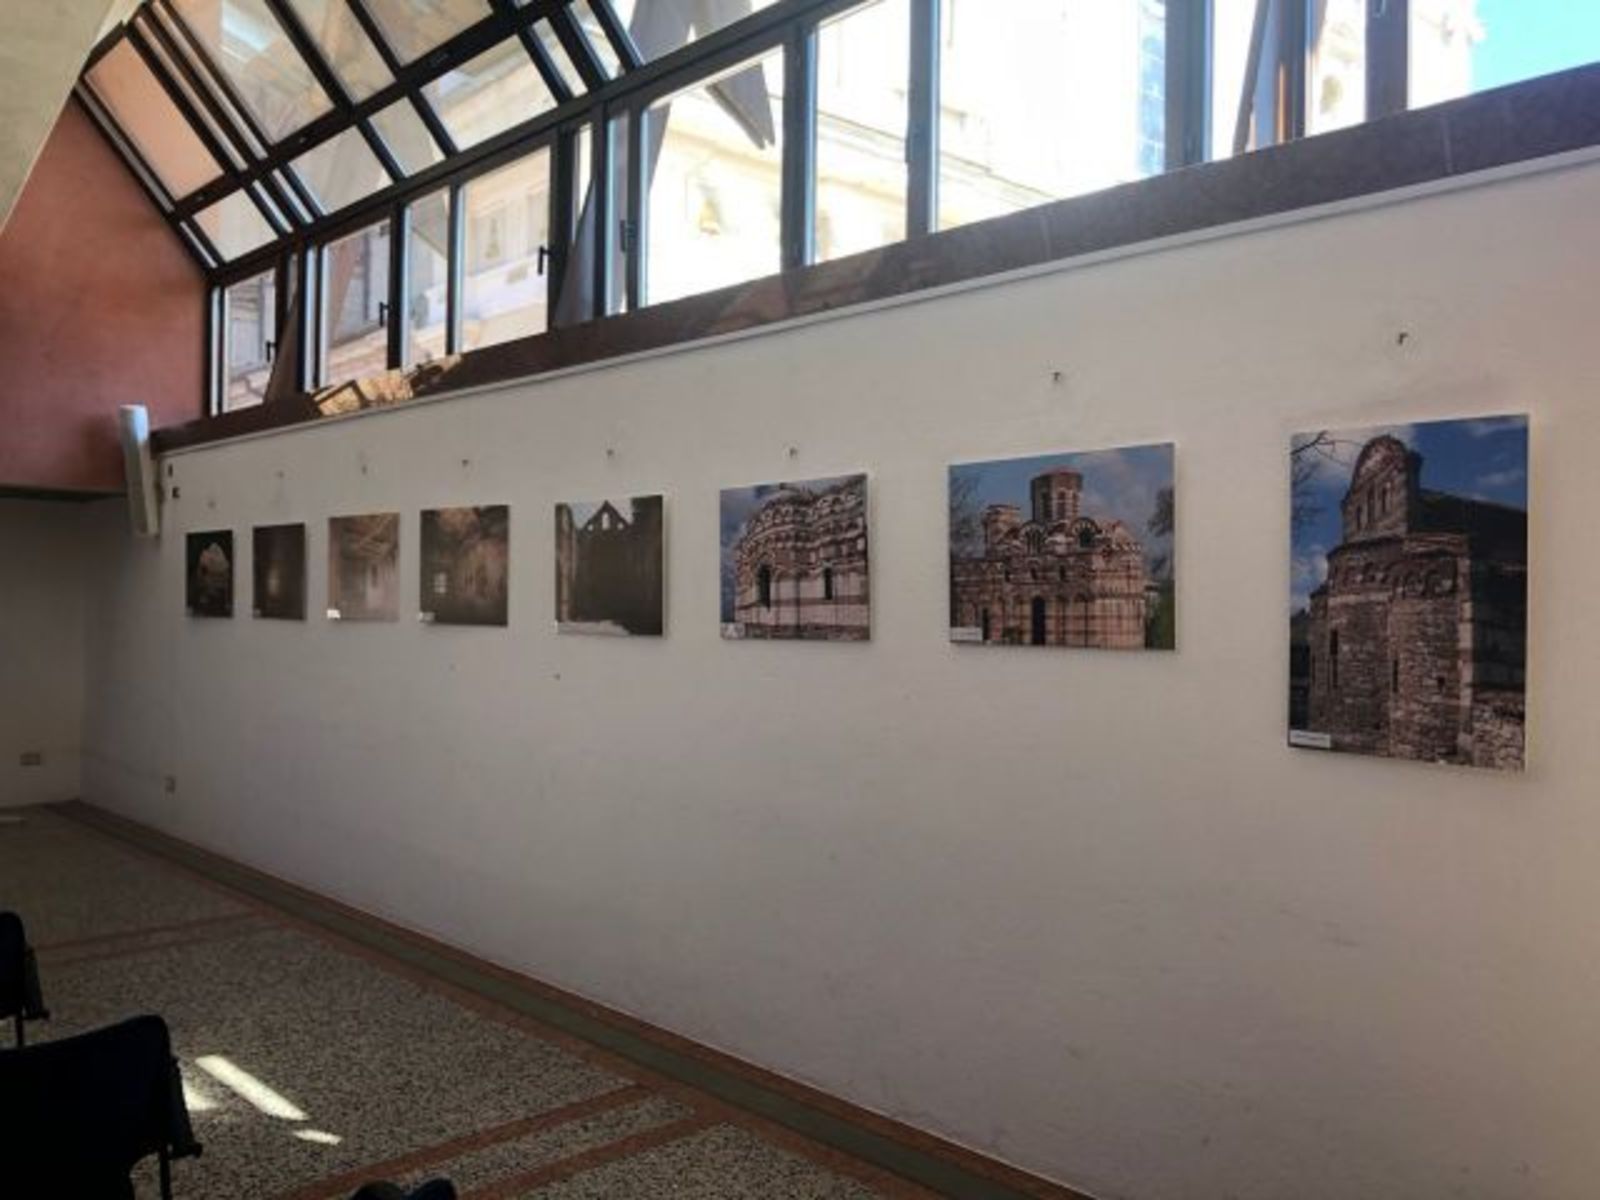 Представяне на изложбата “Български паметници под закрилата на ЮНЕСКО” в Романо ди Ломбардия